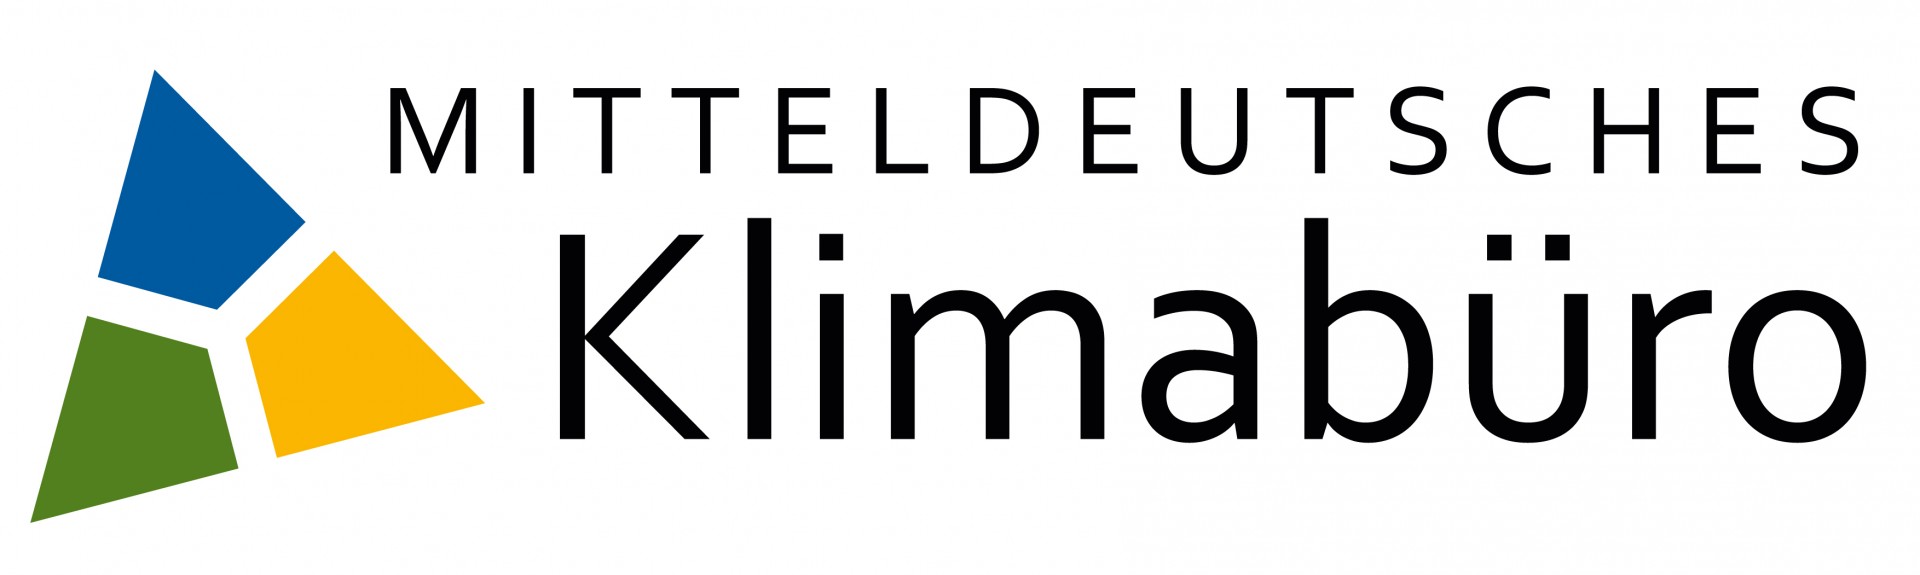 Schriftzug Mitteldeutsches Klimabüro mit einem grün, blau, gelben Dreieck